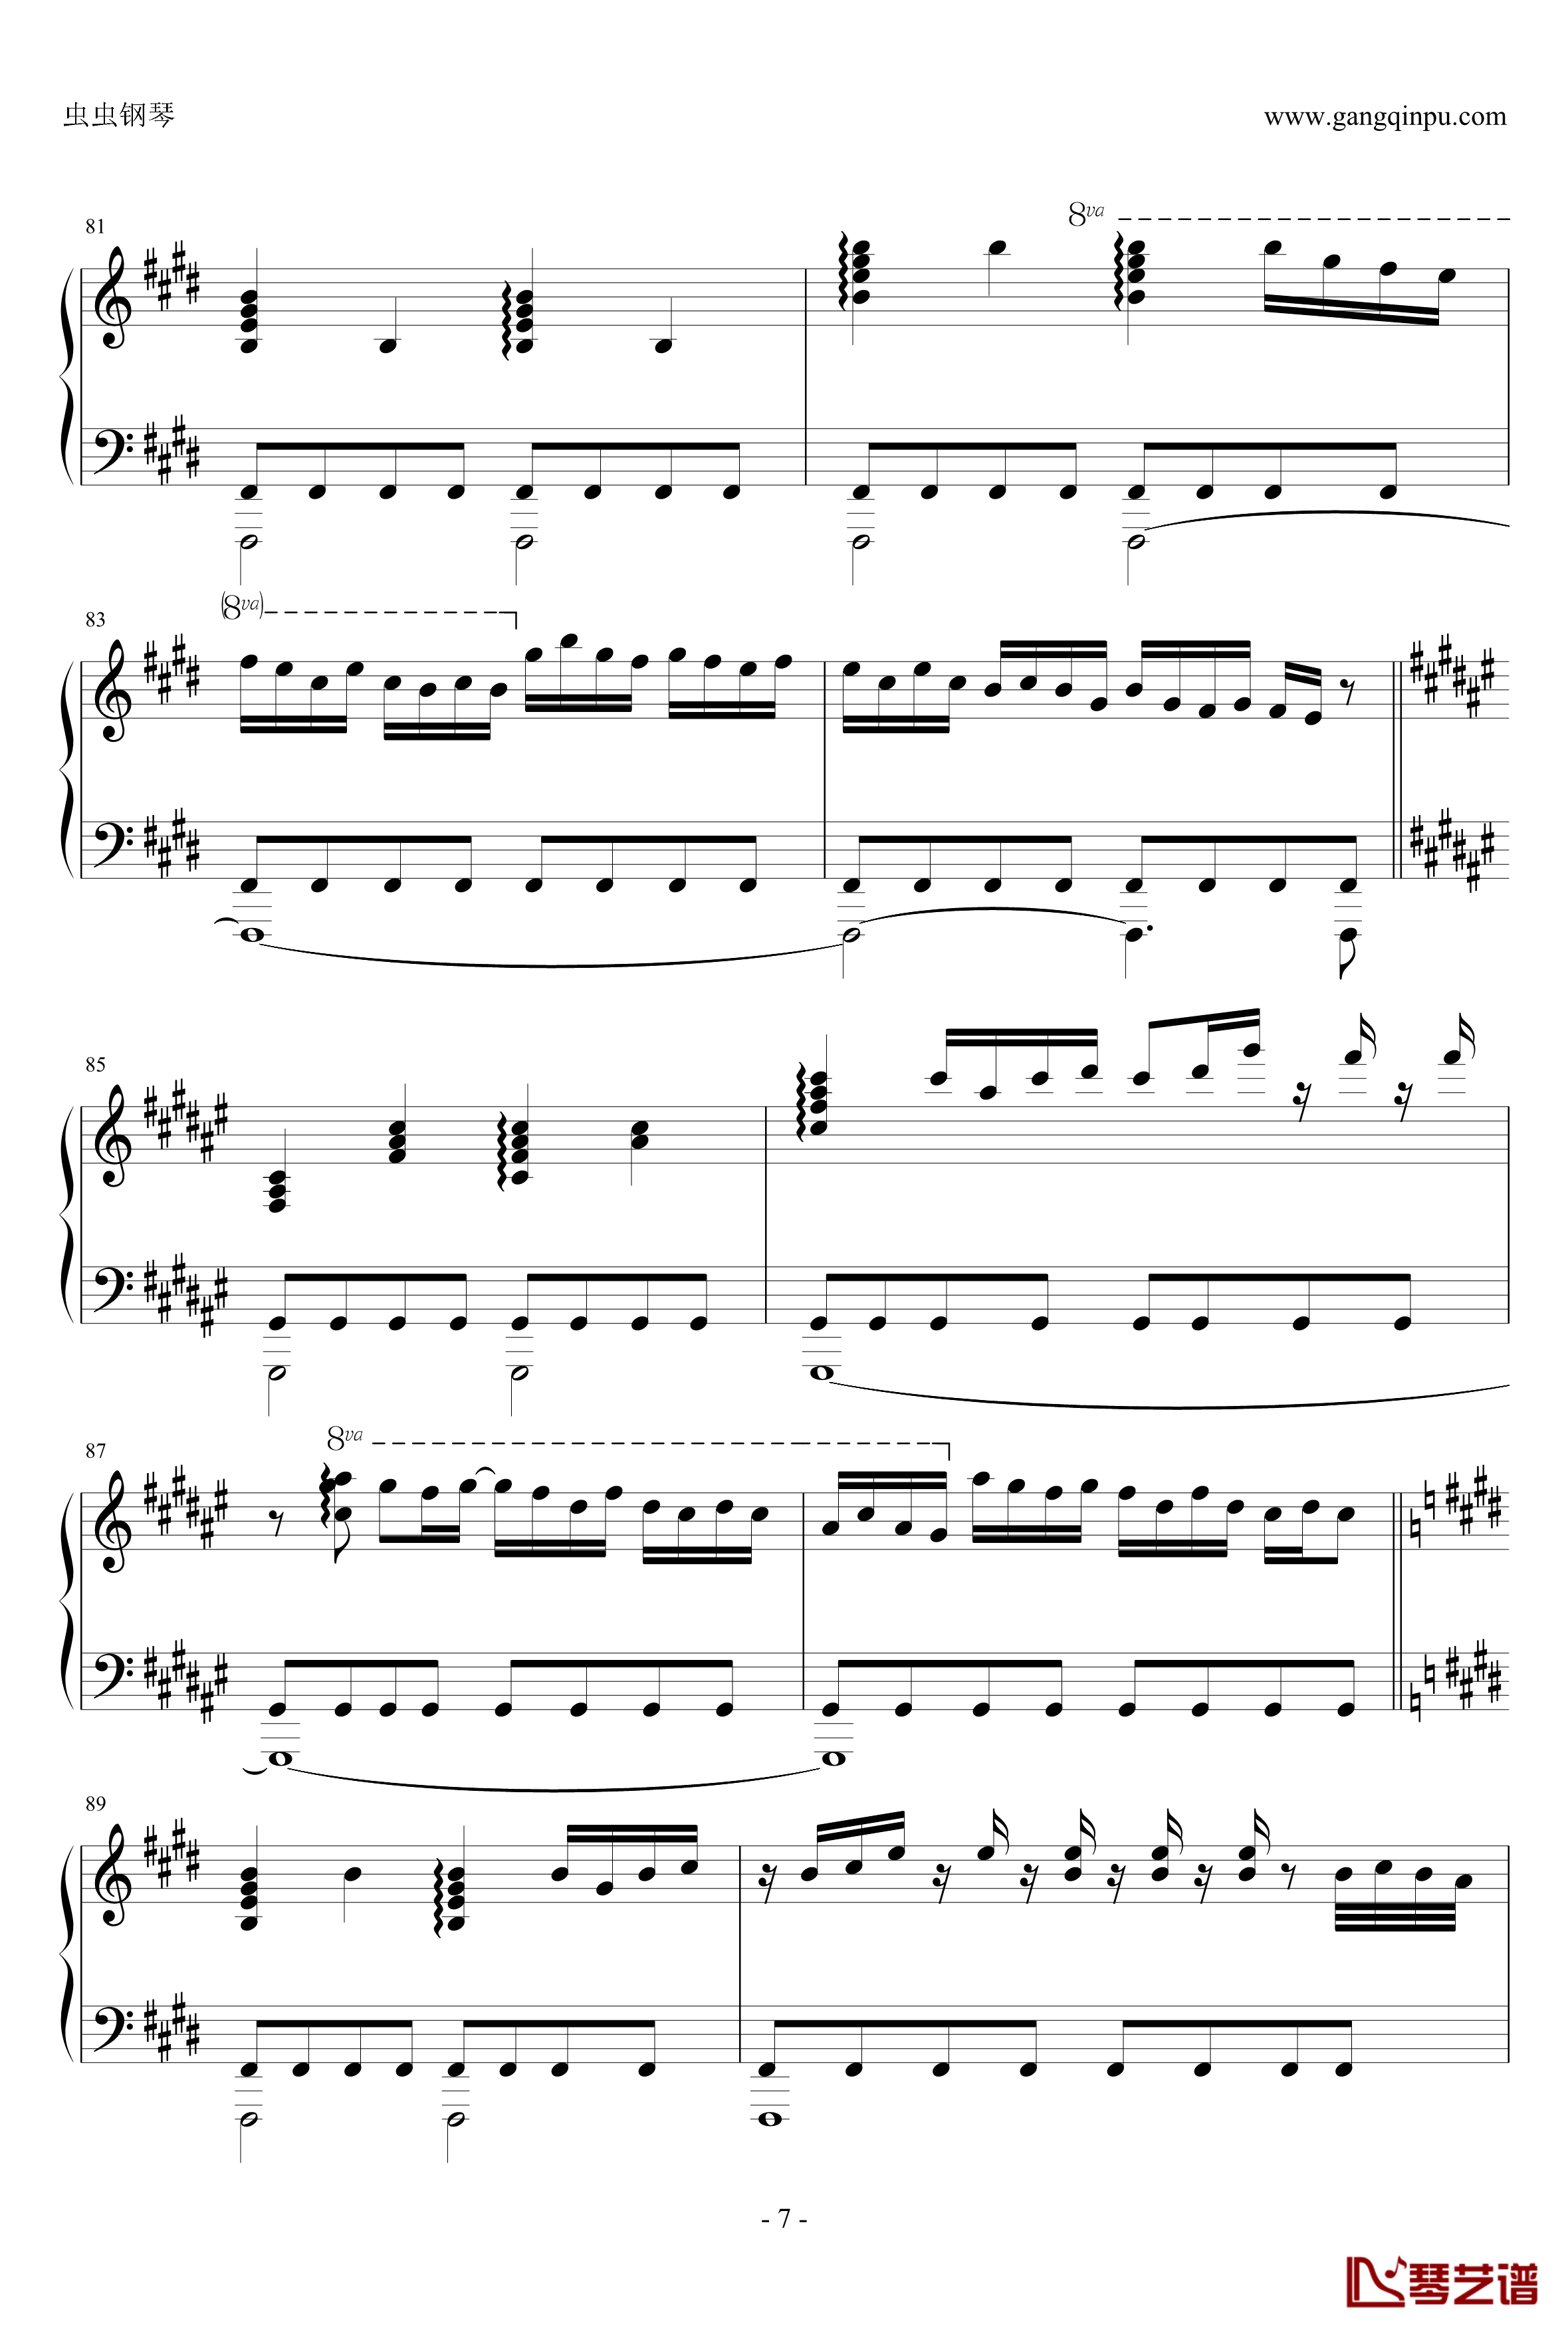 白金迪斯科钢琴谱-伪物语7